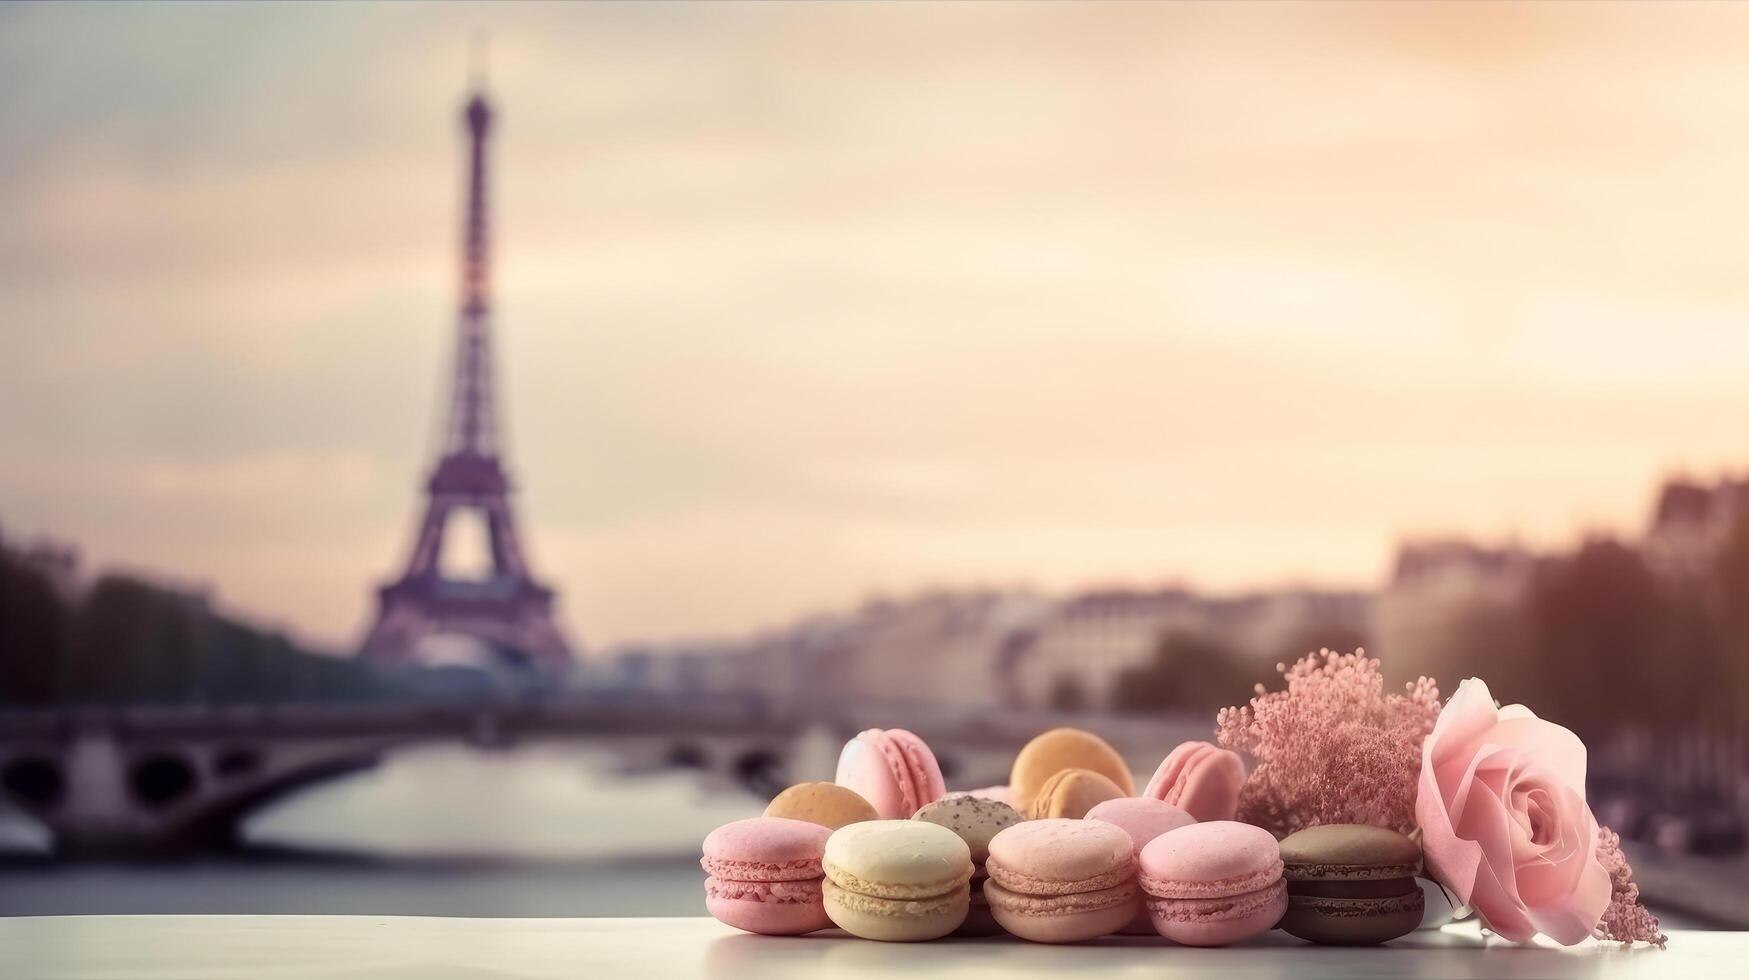 Parigi romantico sfondo. illustrazione ai generativo foto